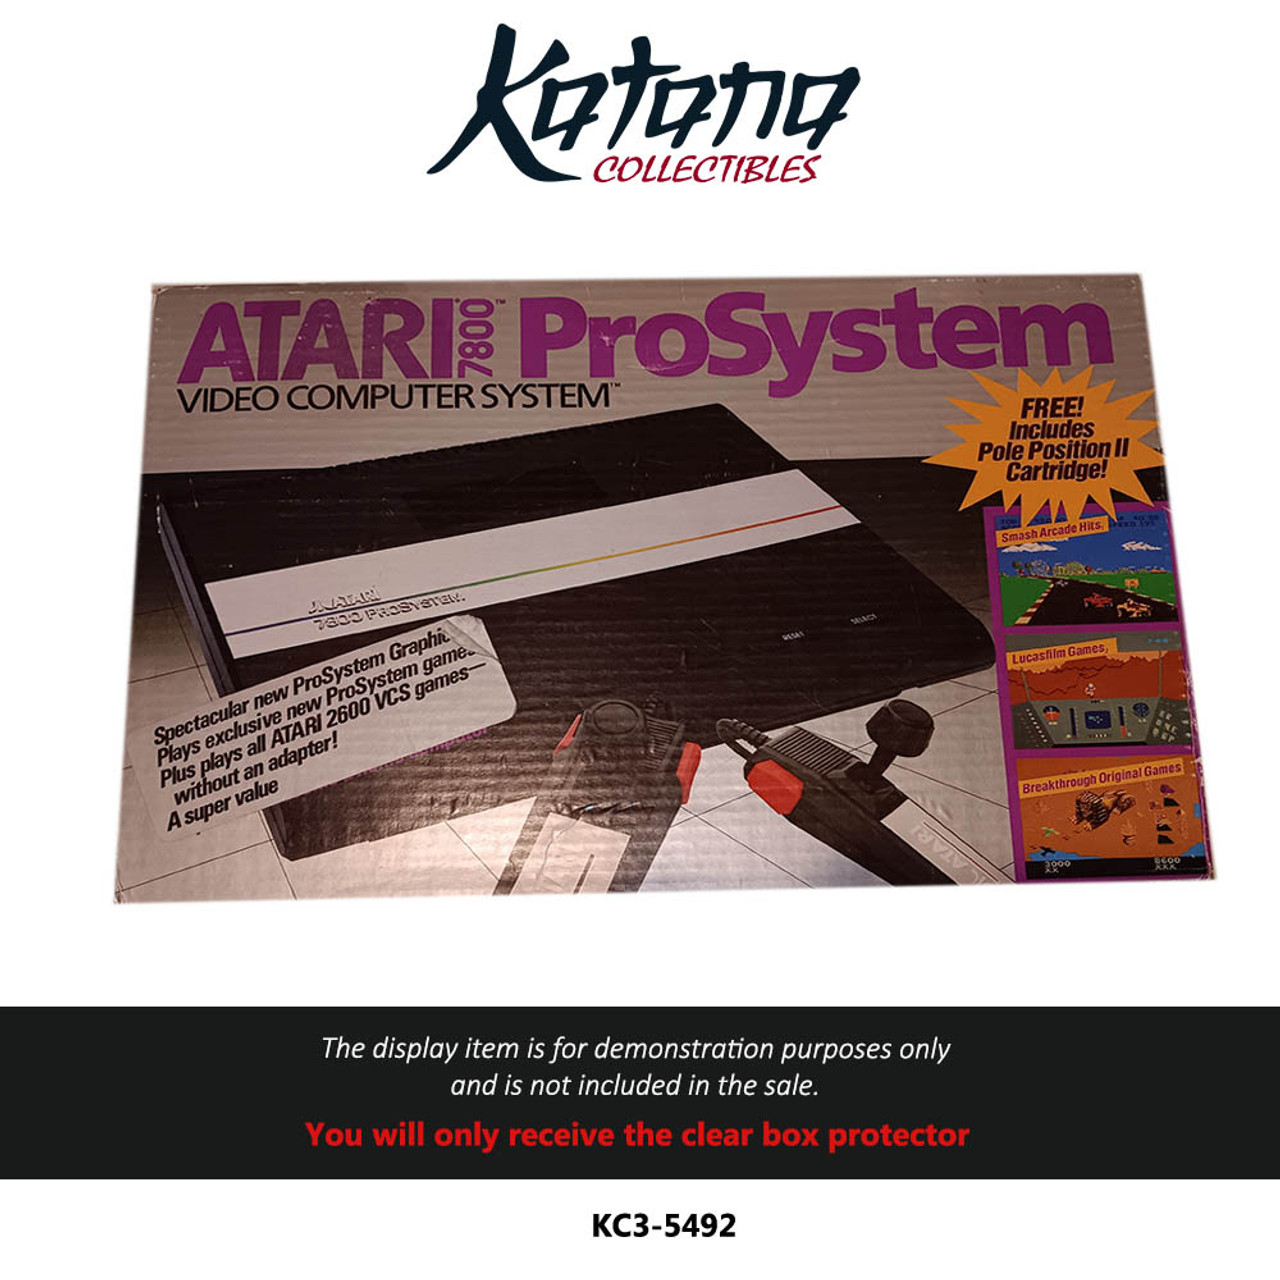 Katana Collectibles Protector For Atari 7800 Console Box